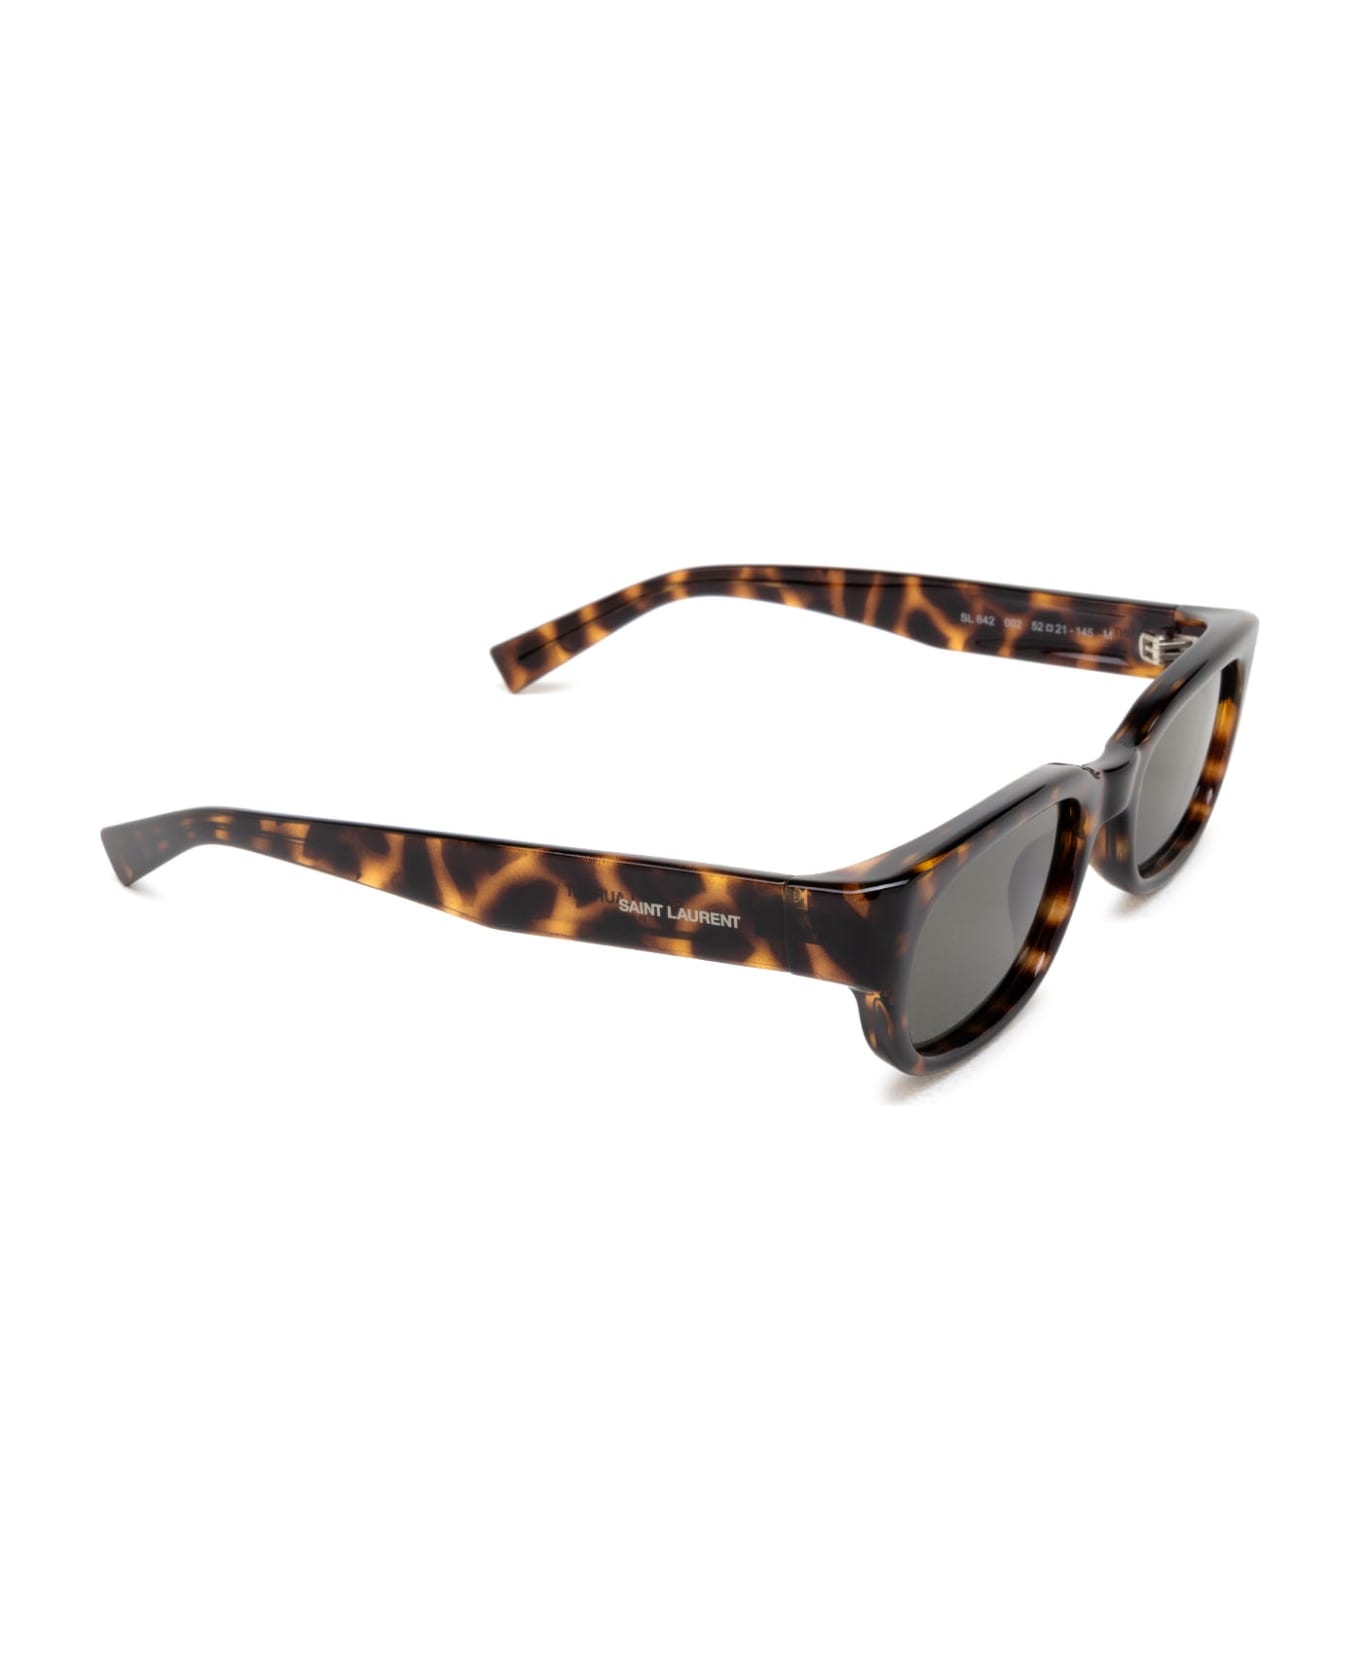 Saint Laurent Eyewear Sl 642 Havana Sunglasses - Havana